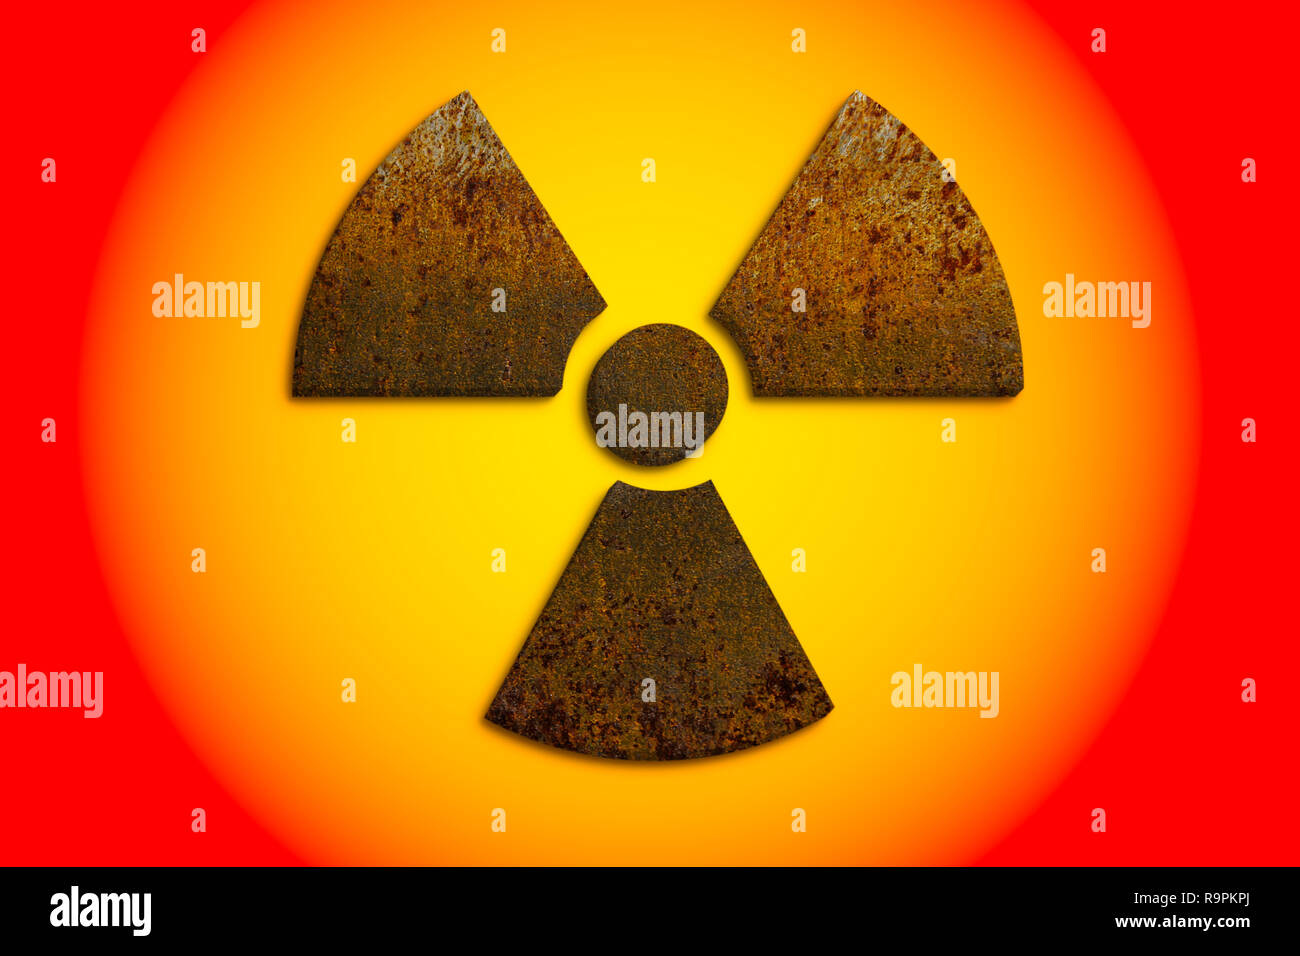 Radioaktivität (ionisierende Strahlung) nukleare Gefahr Symbol aus 3D-rostiges Metall grungy Textur und isoliert auf gelbe und rote Gefahr Warnung Farben Stockfoto